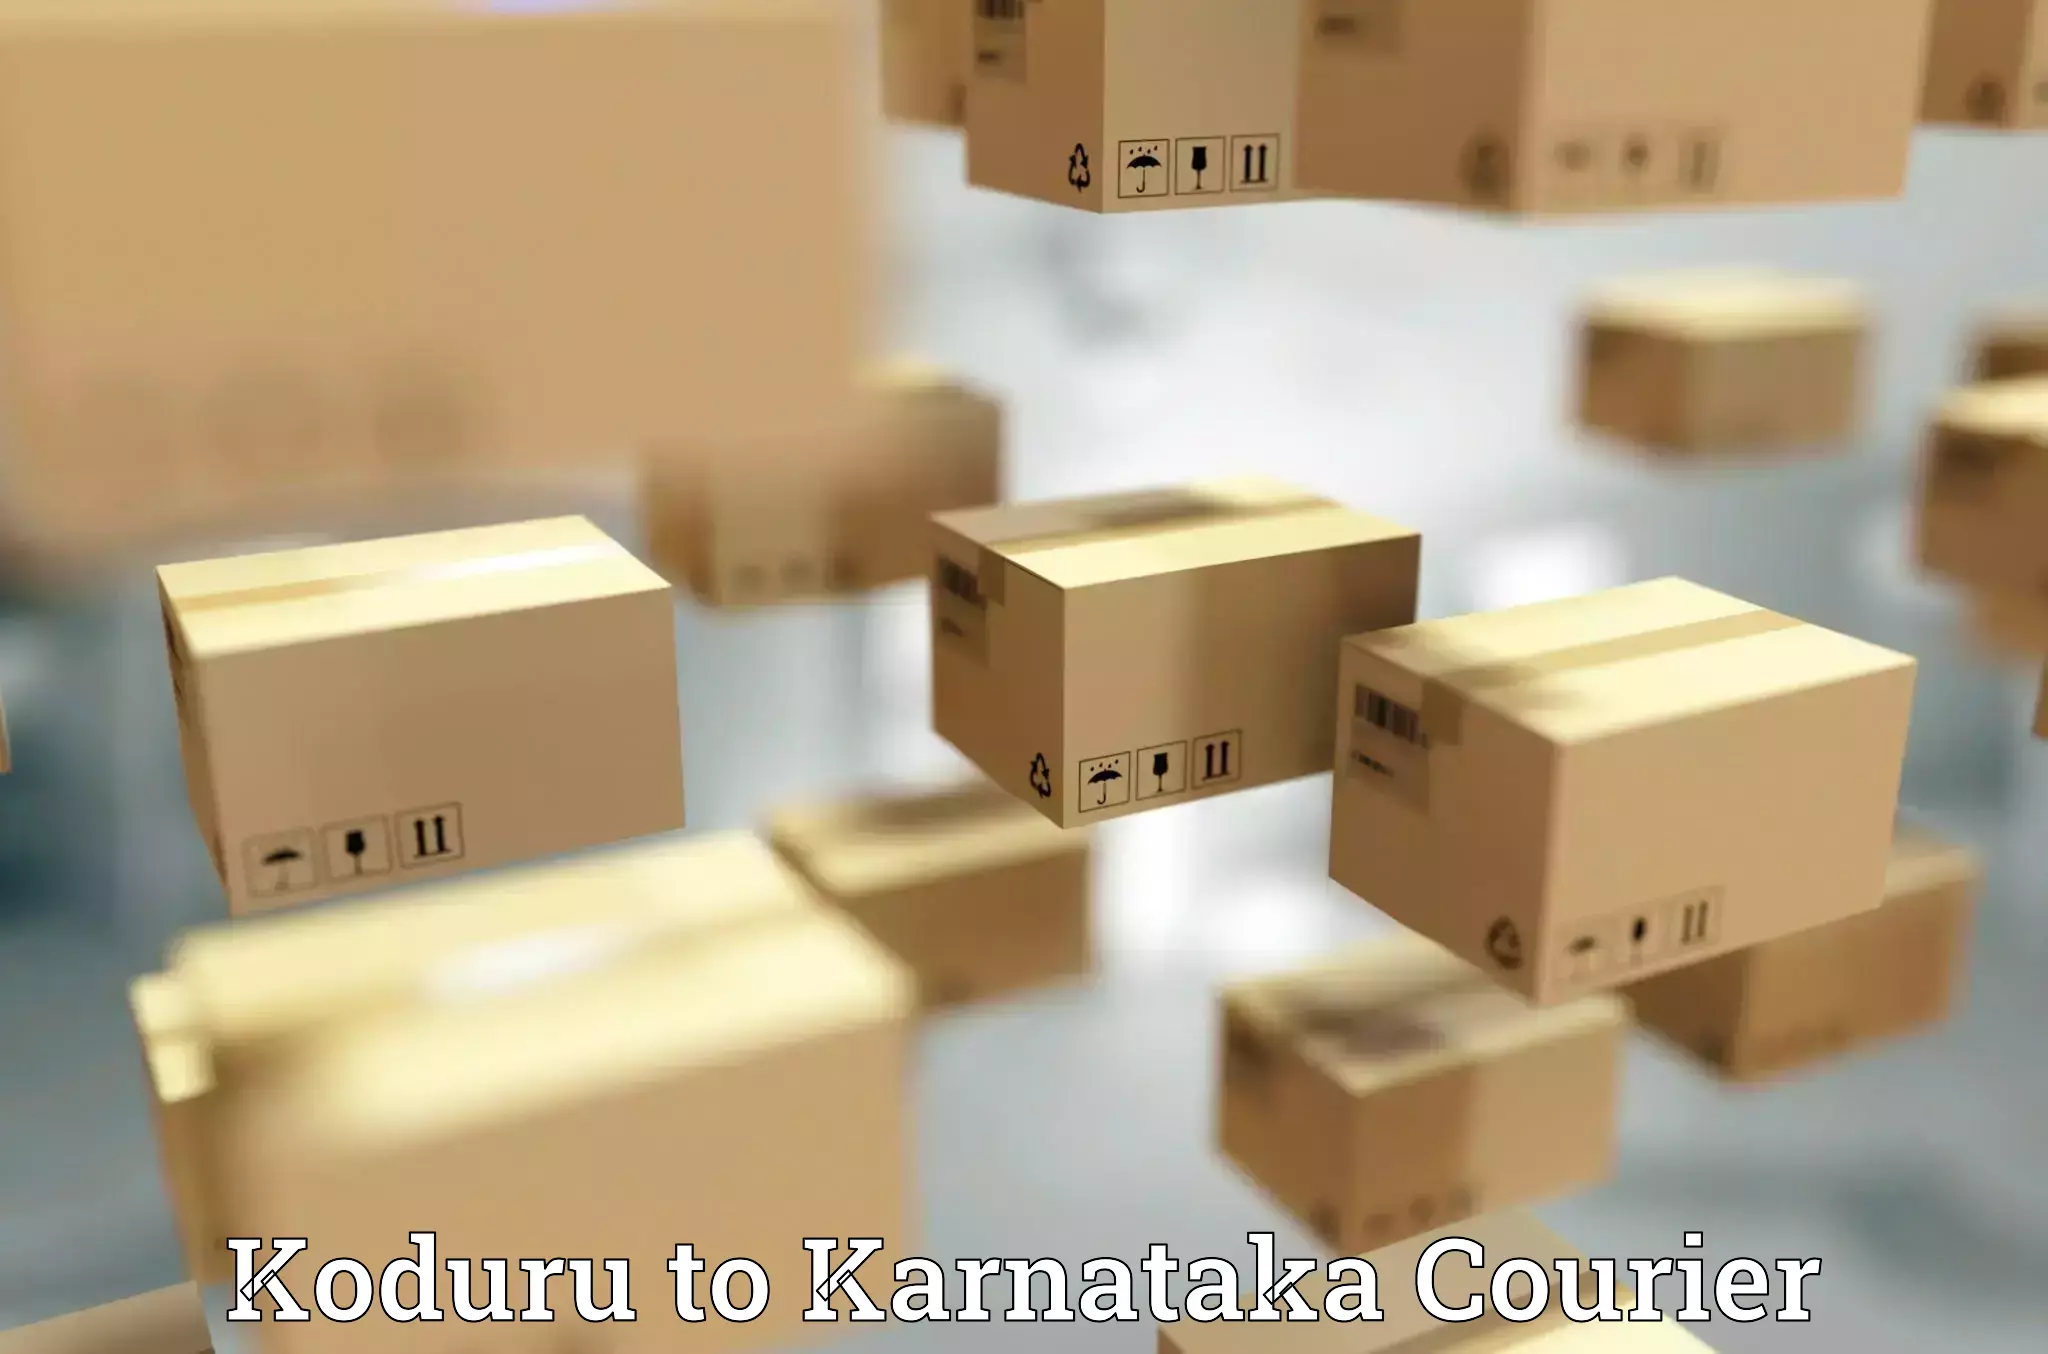 Doorstep delivery service Koduru to Kotturu